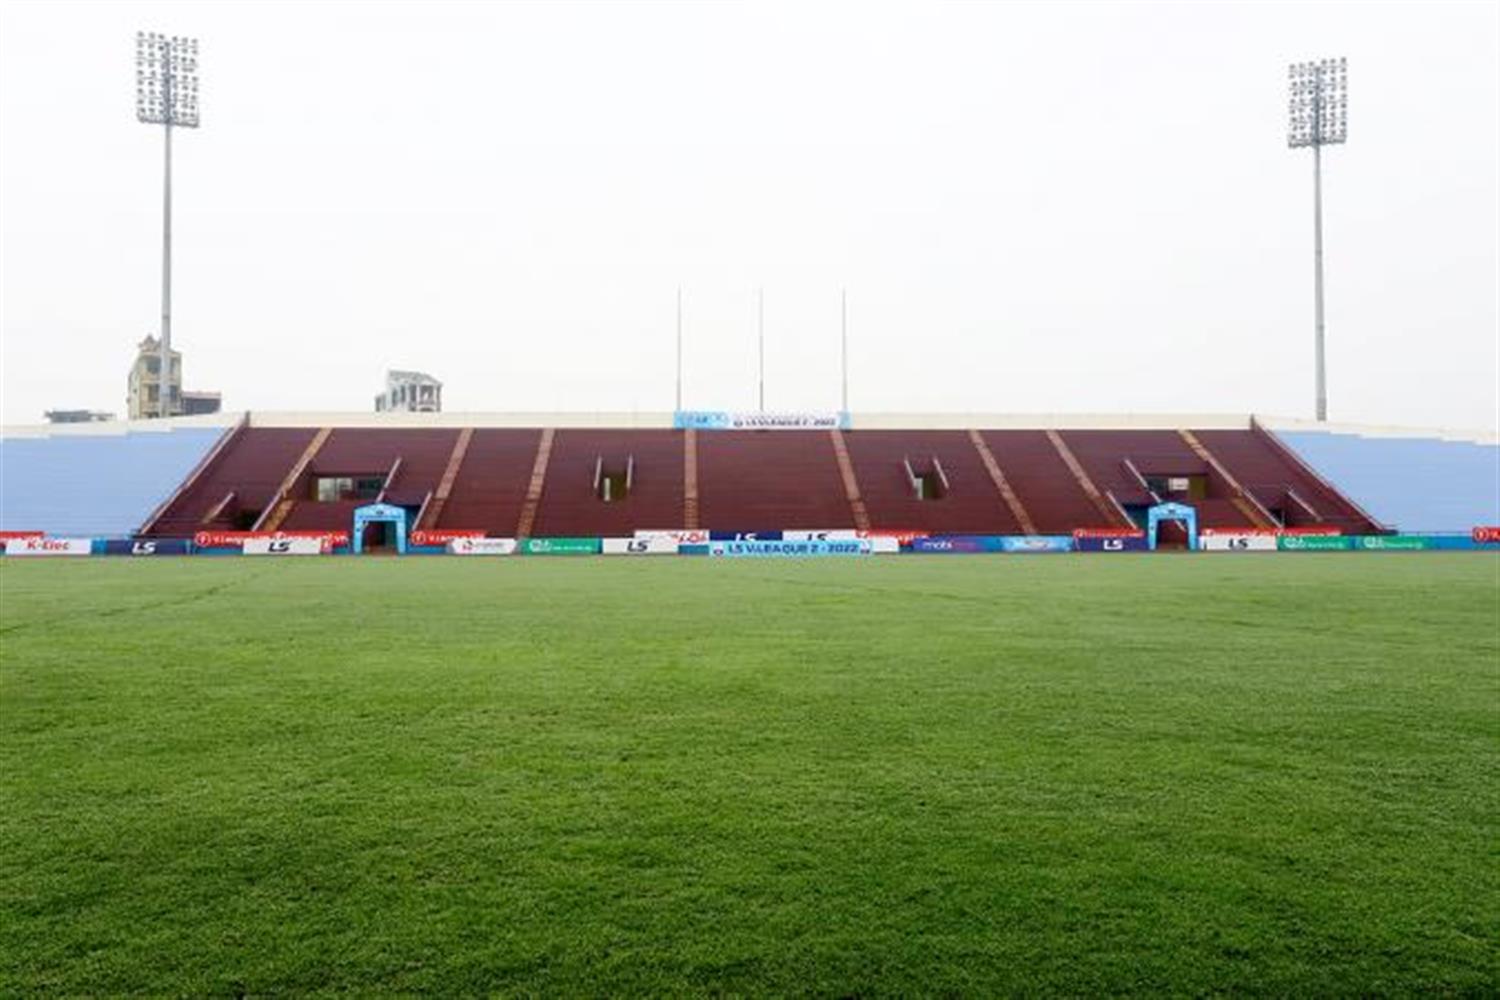 Tỉnh Phú Thọ lần đầu tiên được Liên đoàn Bóng đá Việt Nam lựa chọn là nơi diễn ra các trận thi đấu của Bảng A và 1 trận Bán kết của môn Bóng đá nam SEA Games 31. Để đáp ứng các yêu cầu về tiêu chuẩn của Liên đoàn Bóng đá châu Á (AFC), thời điểm này, Phú Thọ đã hoàn thành các điều kiện về cơ sở vật chất để đảm bảo tổ chức tốt môn Bóng đá nam SEA Games 31.